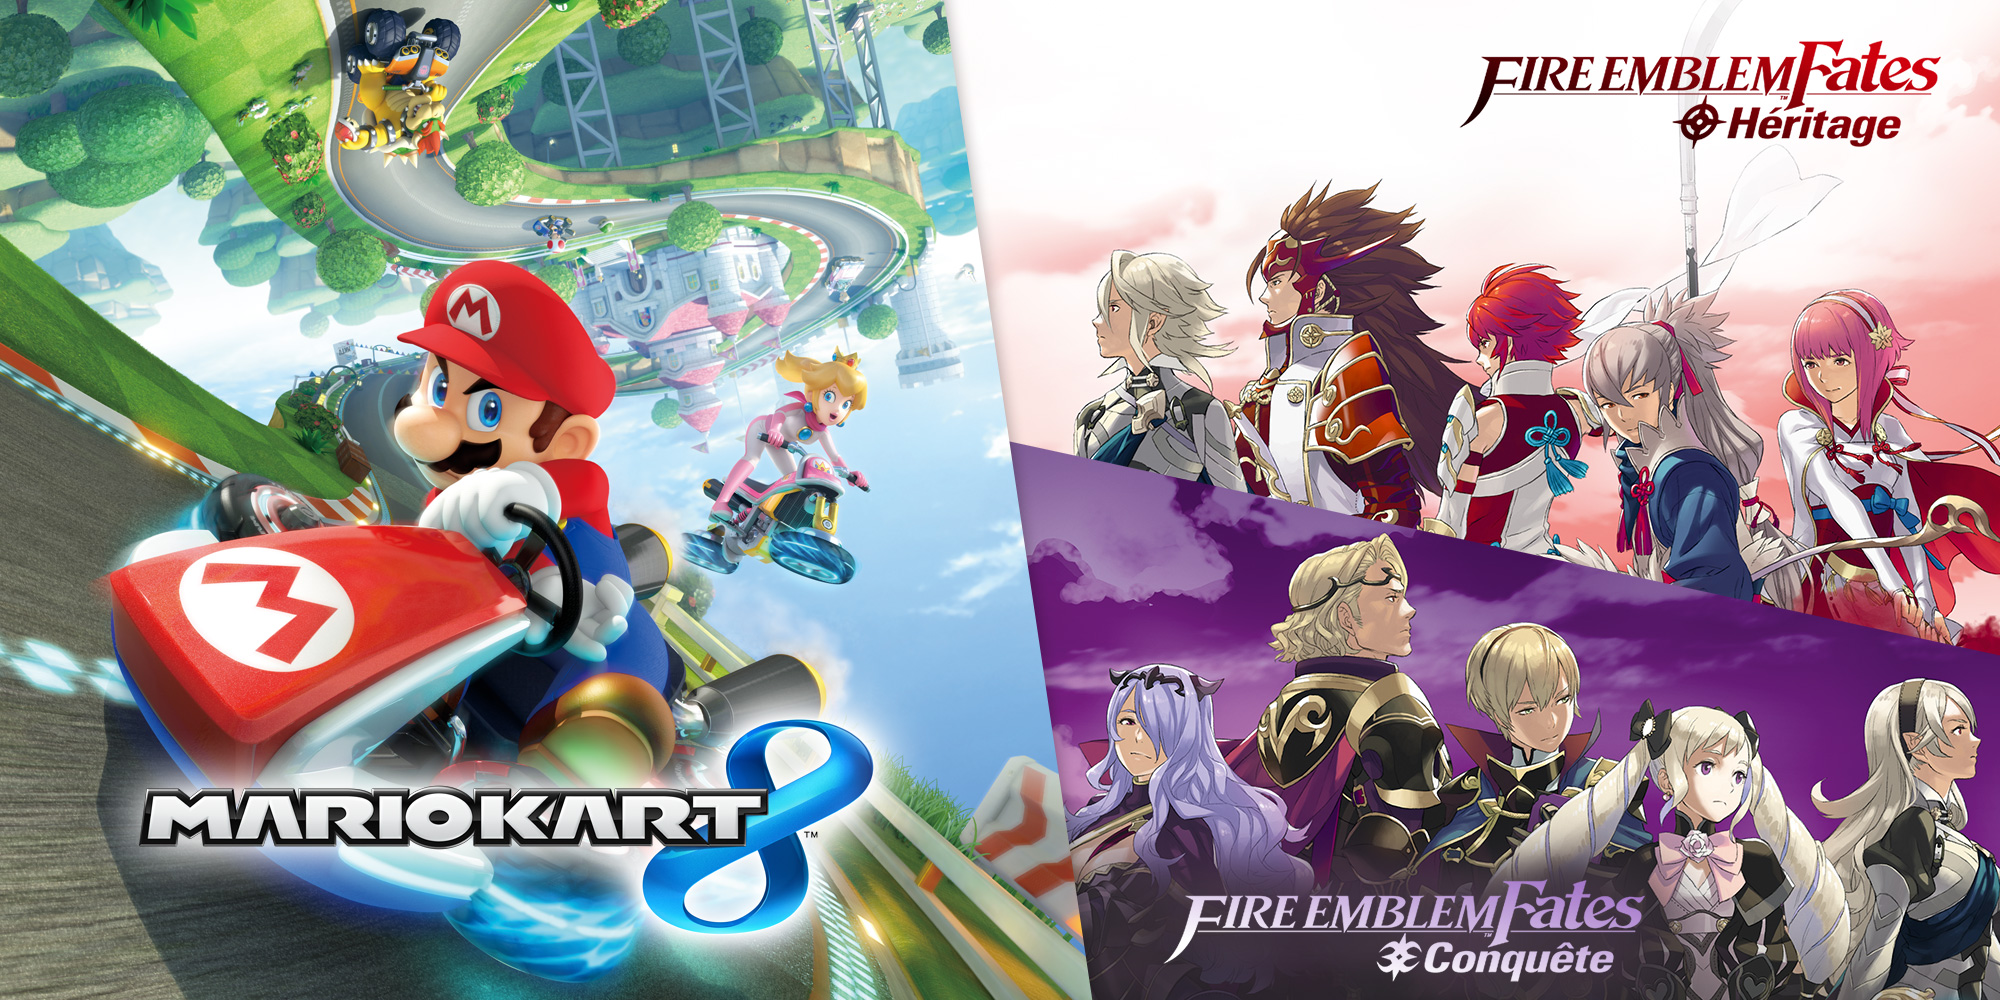 Réductions sur le contenu additionnel de Mario Kart 8 et Fire Emblem Fates sur le Nintendo eShop